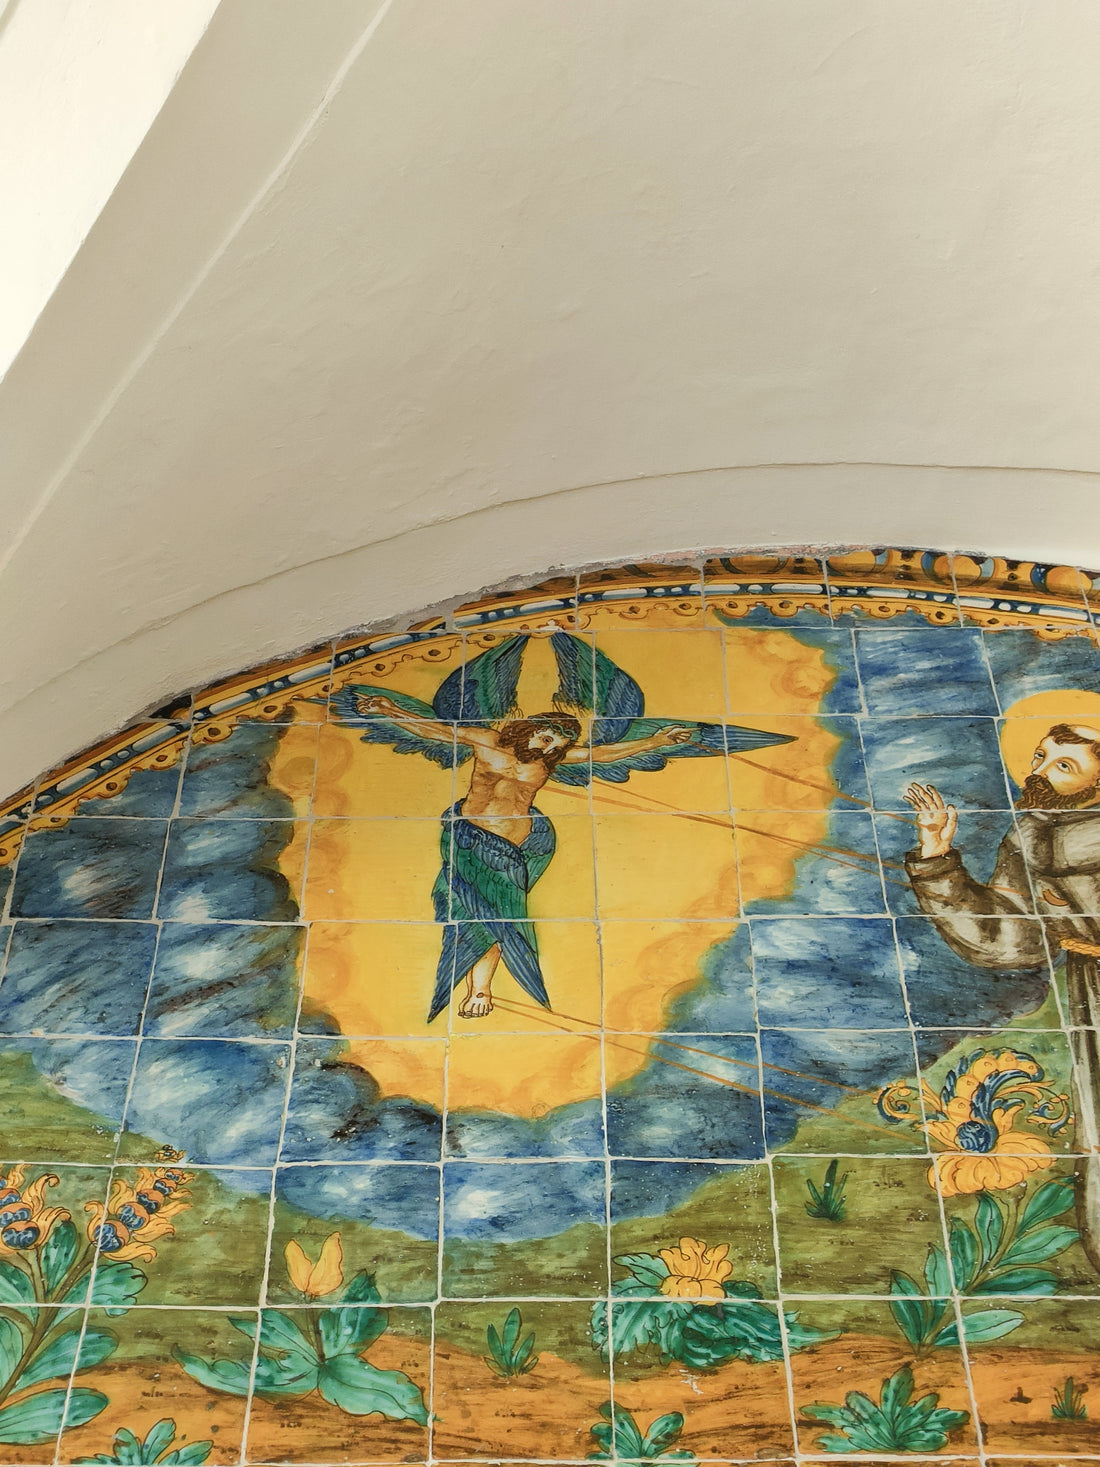 "陶芸と人々 "。テラサにあるサン・フランセスク修道院のタイルについて、サラ・ゲレロさんが語ってくれました。